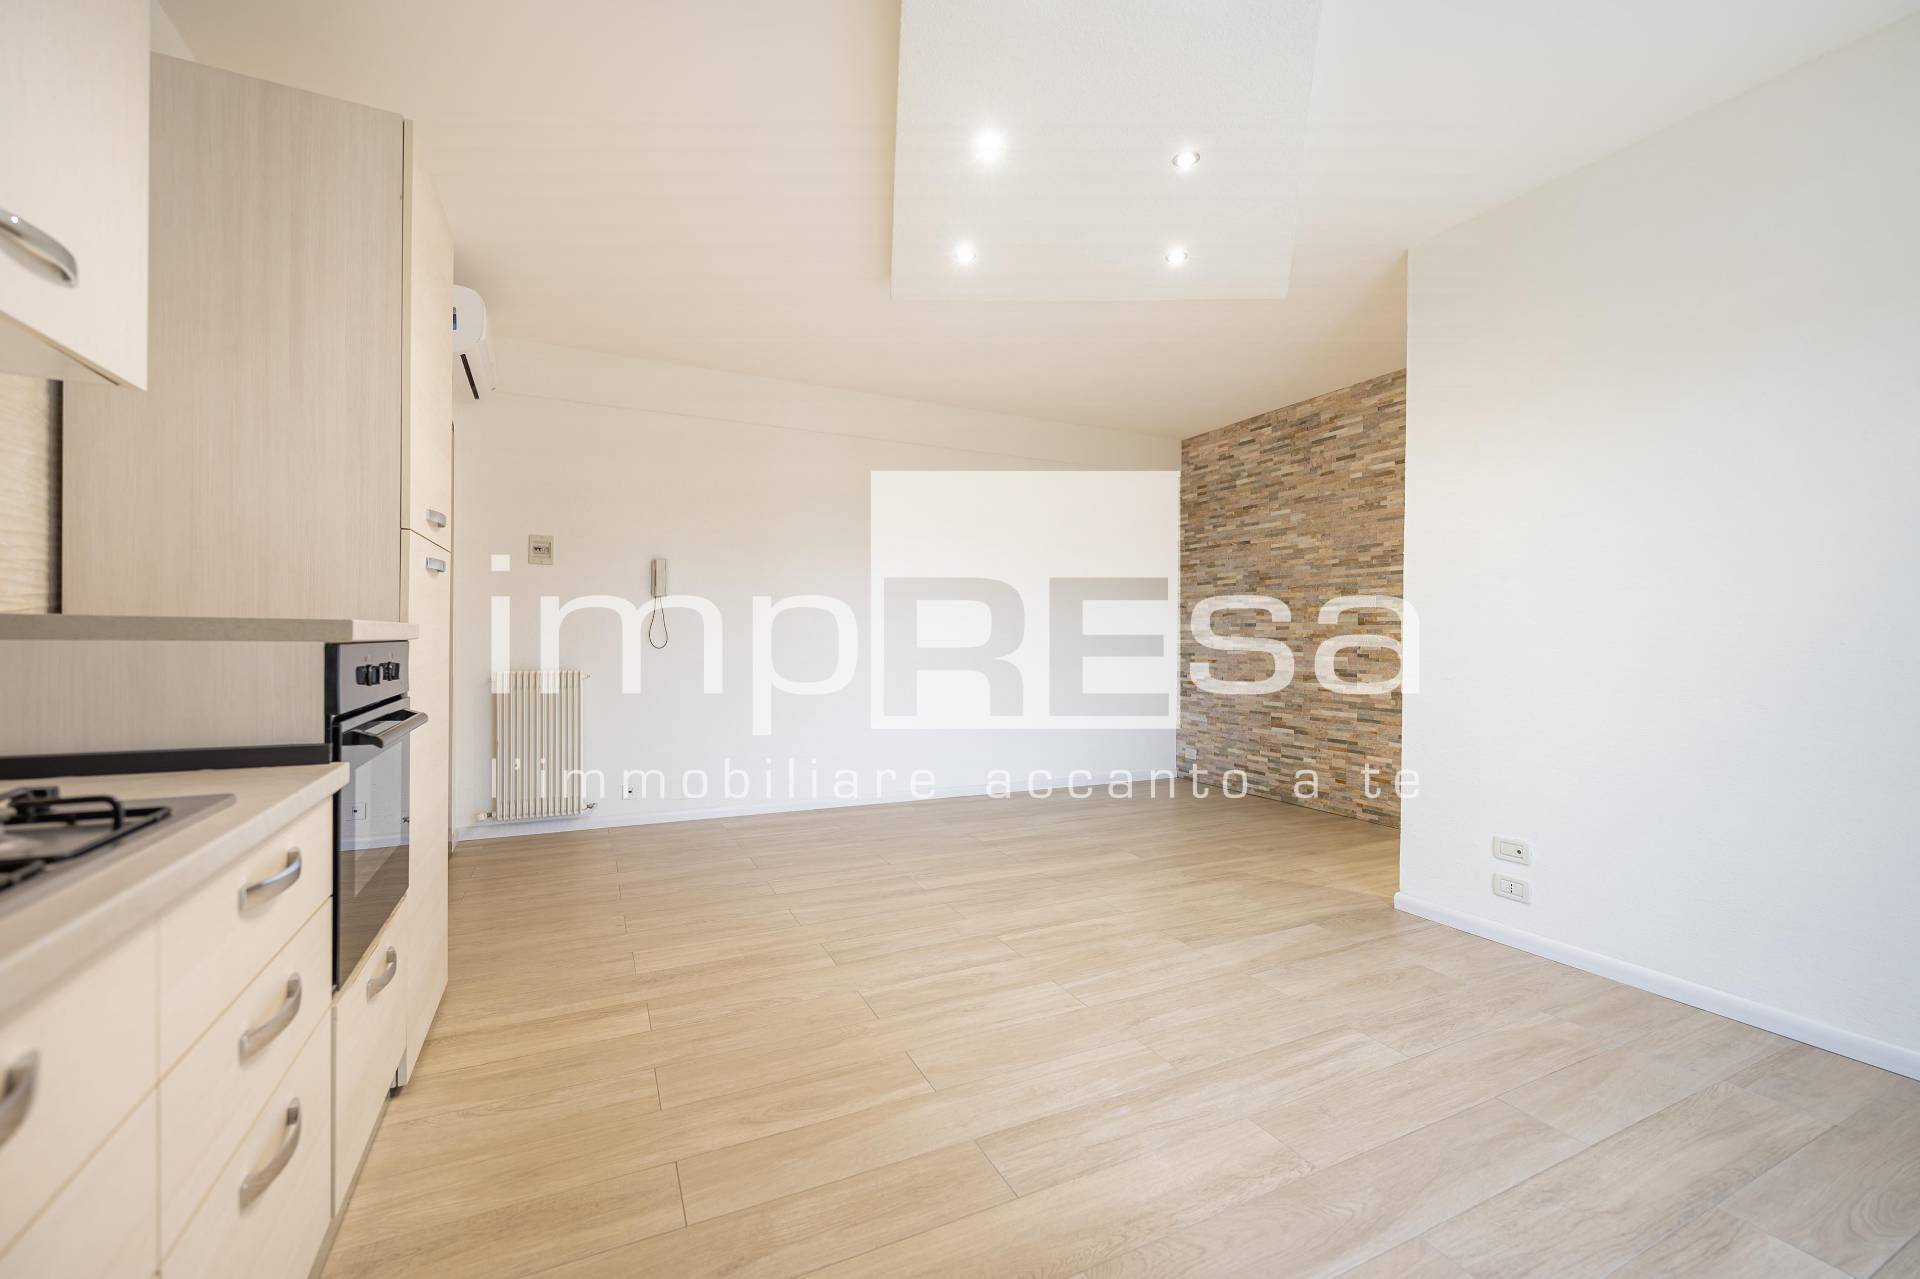 Appartamento in vendita a Susegana, 4 locali, zona Località: PontedellaPriula, prezzo € 137.000 | PortaleAgenzieImmobiliari.it